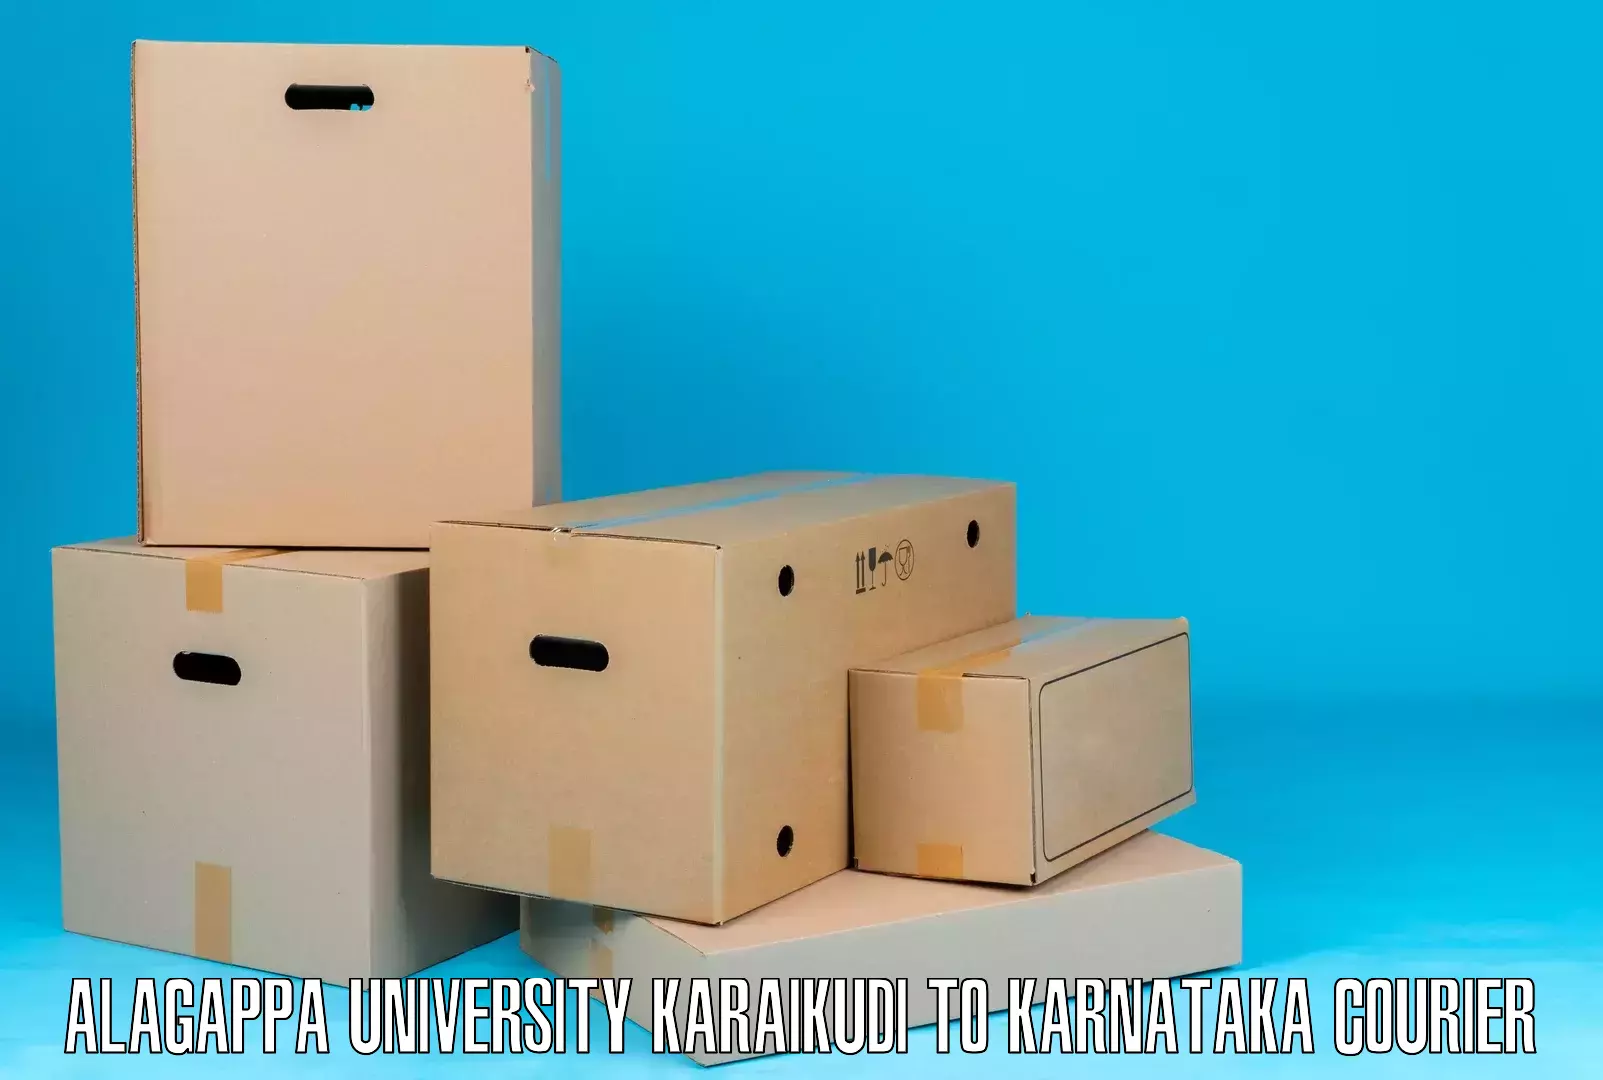 Ground shipping Alagappa University Karaikudi to Yelburga